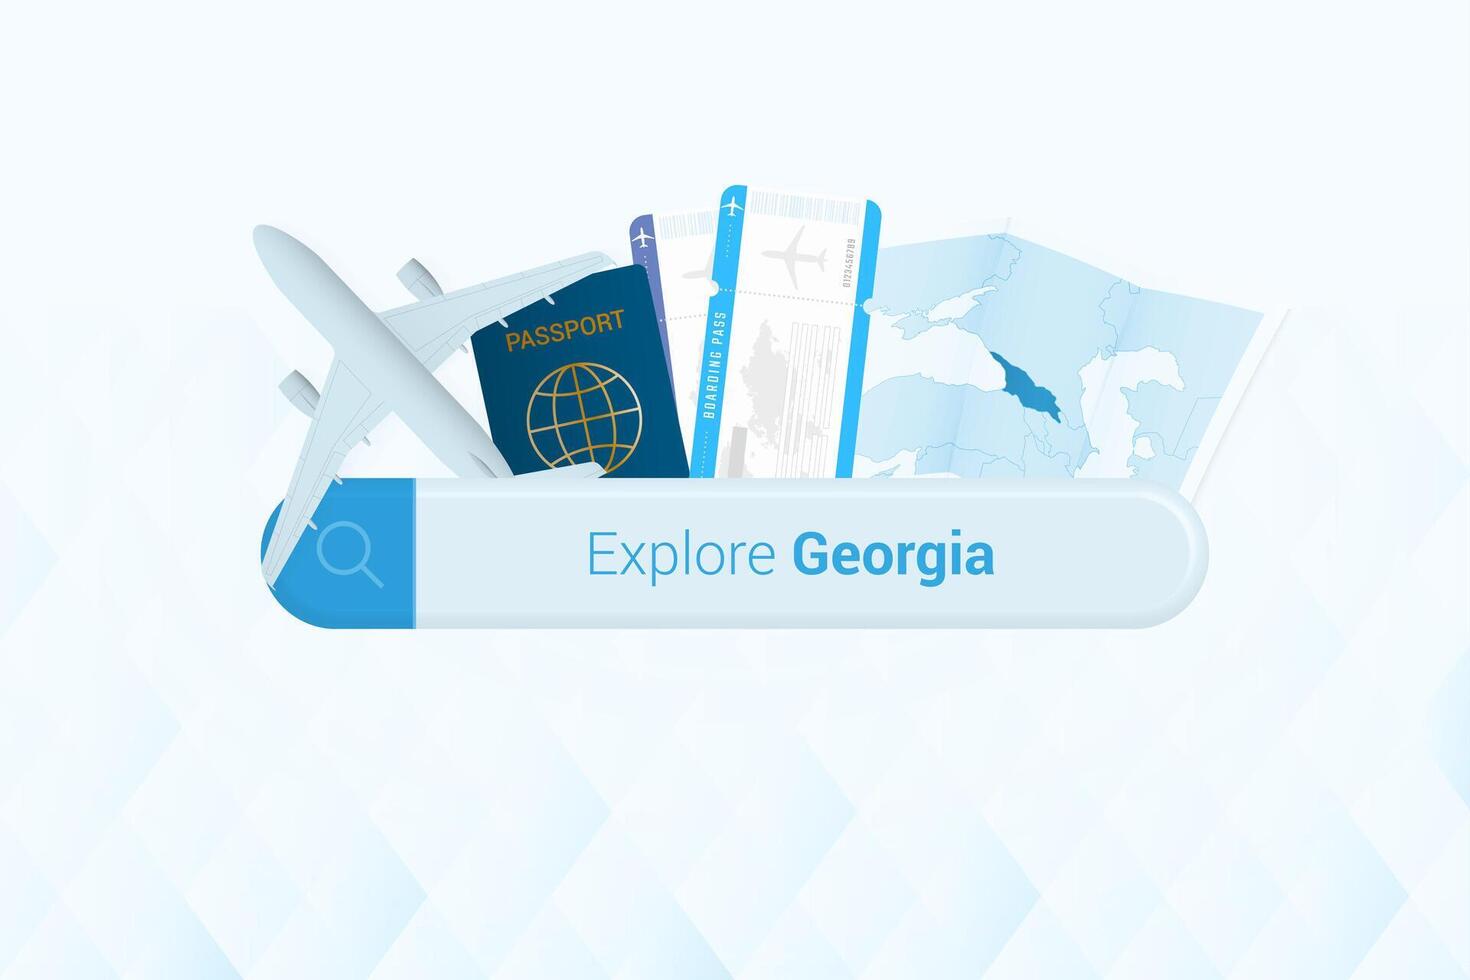 suchen Tickets zu Georgia oder Reise Ziel im Georgia. suchen Bar mit Flugzeug, Reisepass, Einsteigen passieren, Tickets und Karte. vektor